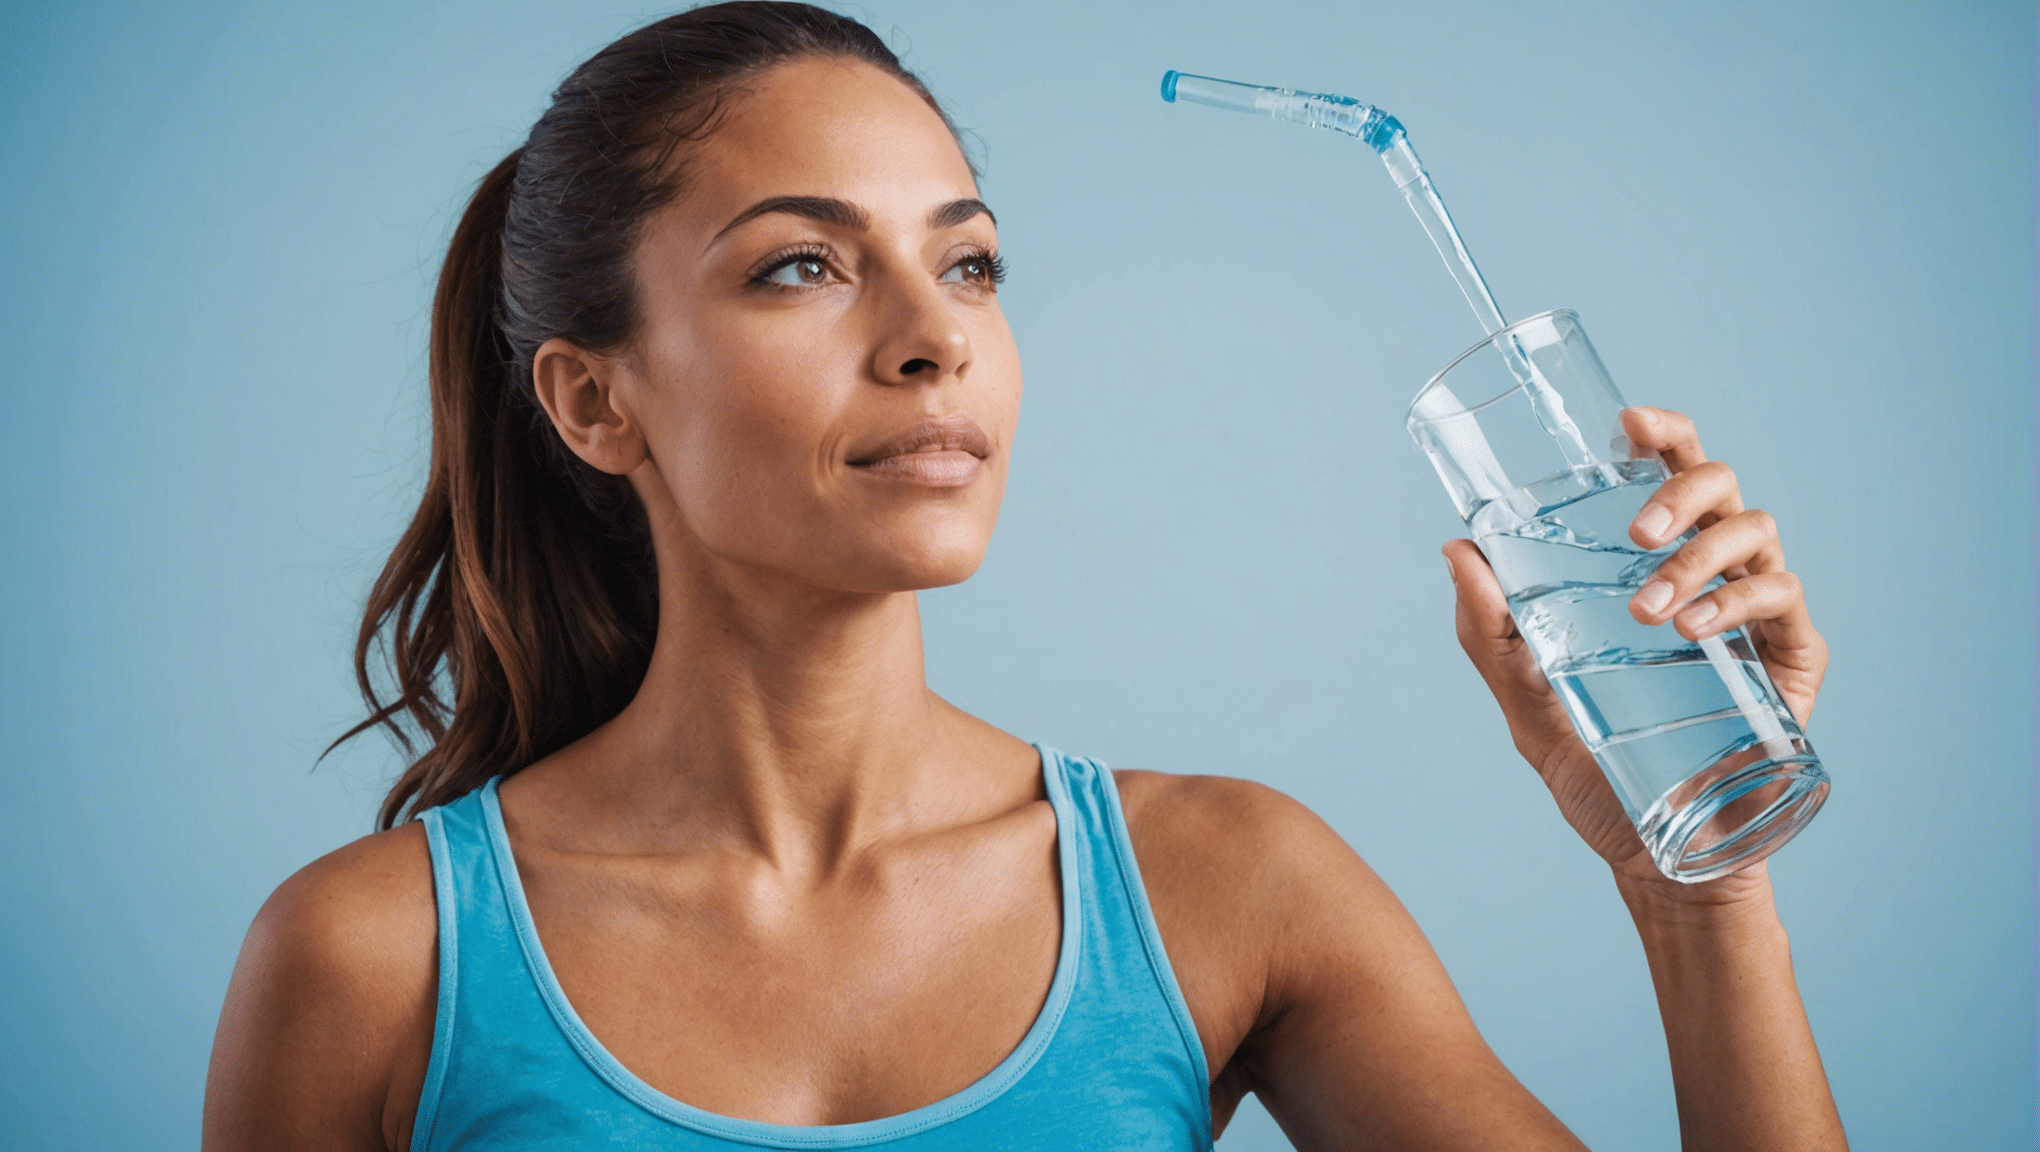 découvrez nos conseils pour assurer une hydratation adéquate et maintenir un équilibre hydrique optimal dans votre quotidien.